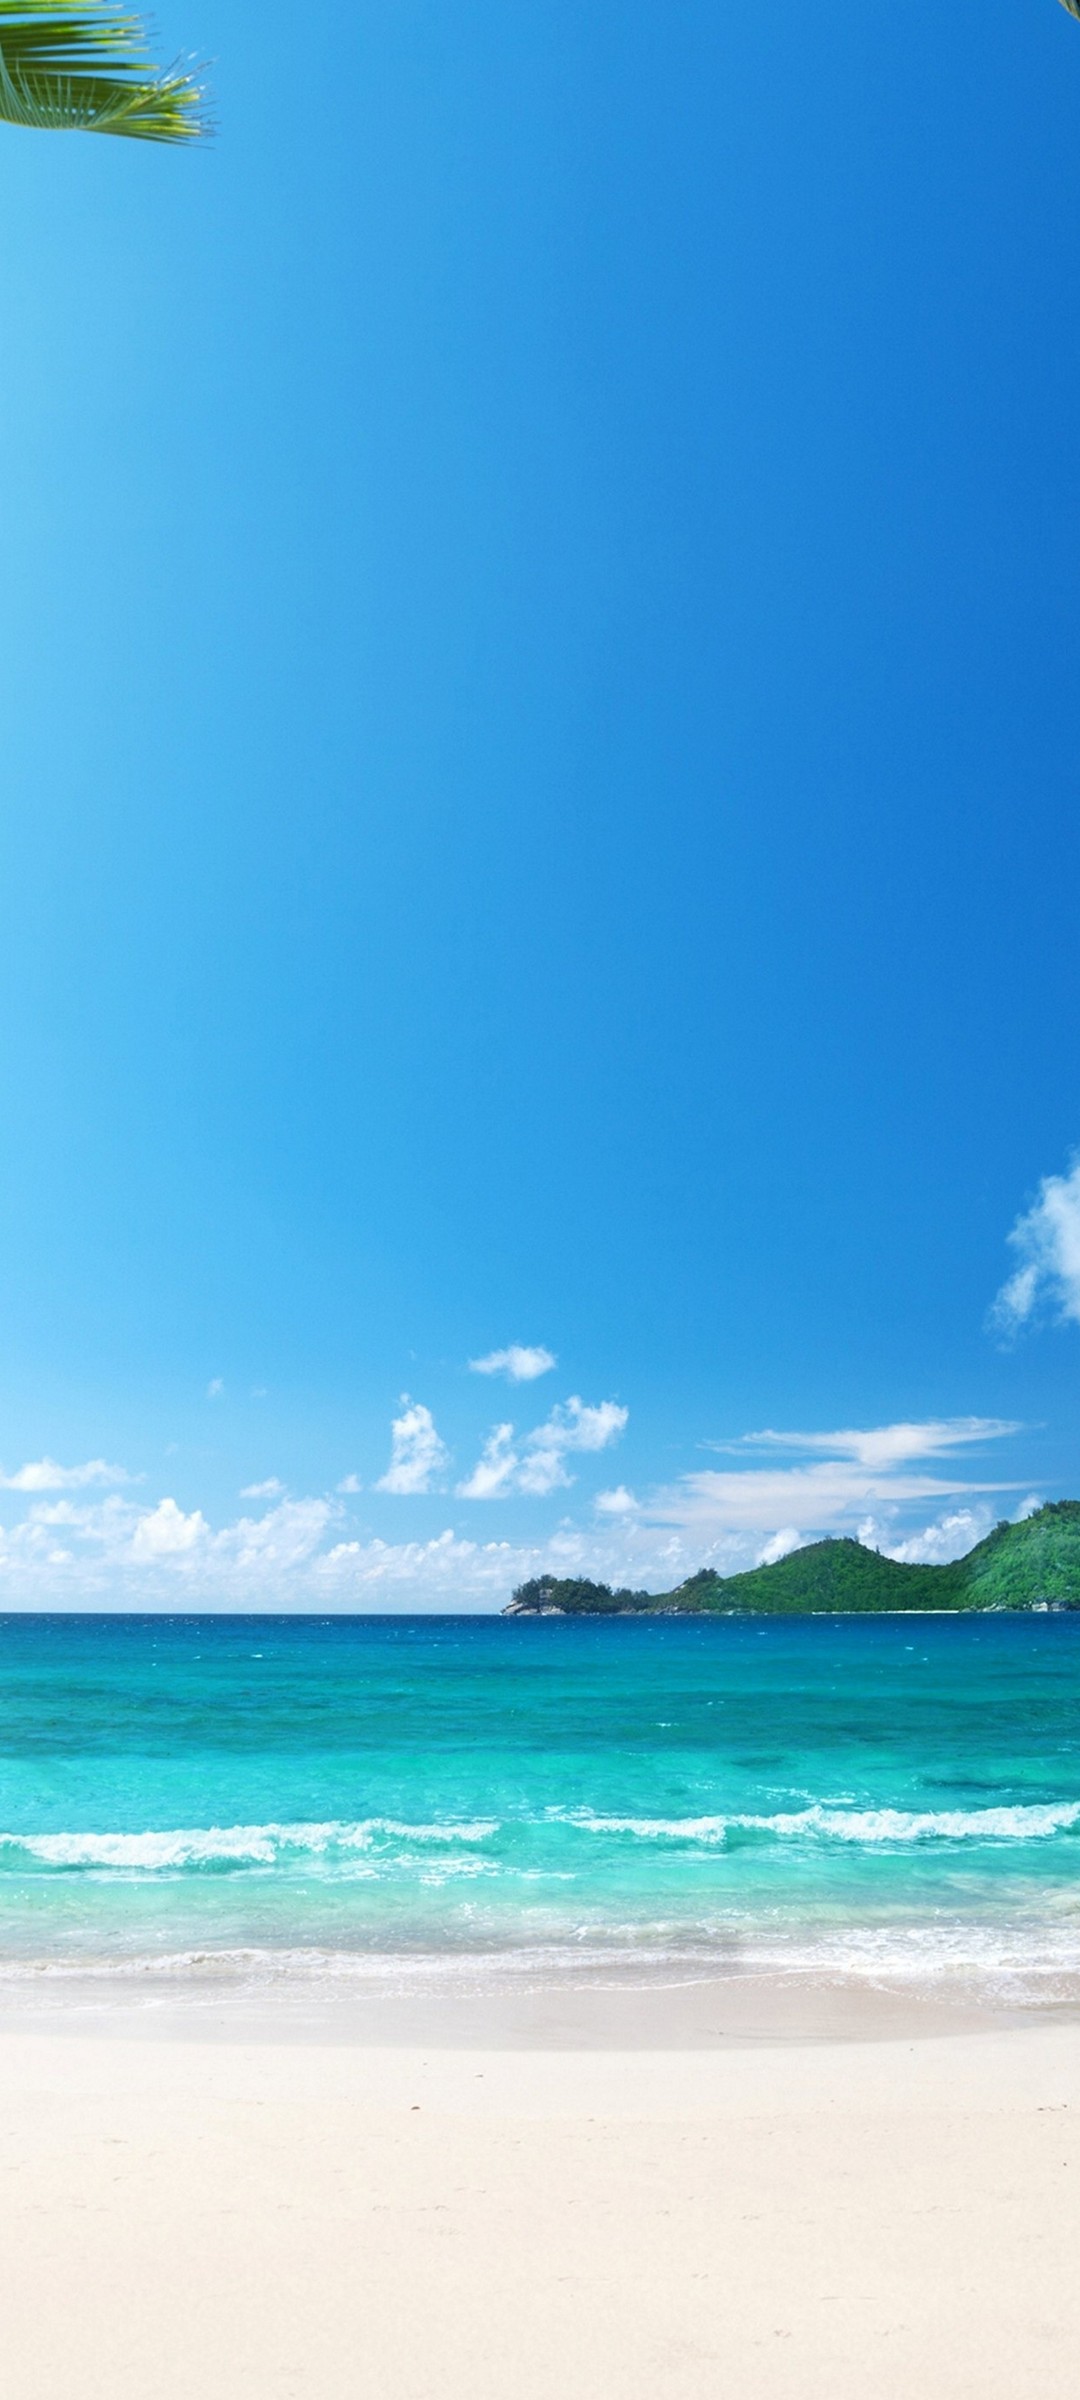 ハワイ 綺麗な海と砂浜 Galaxy S21 5g Androidスマホ壁紙 待ち受け スマラン